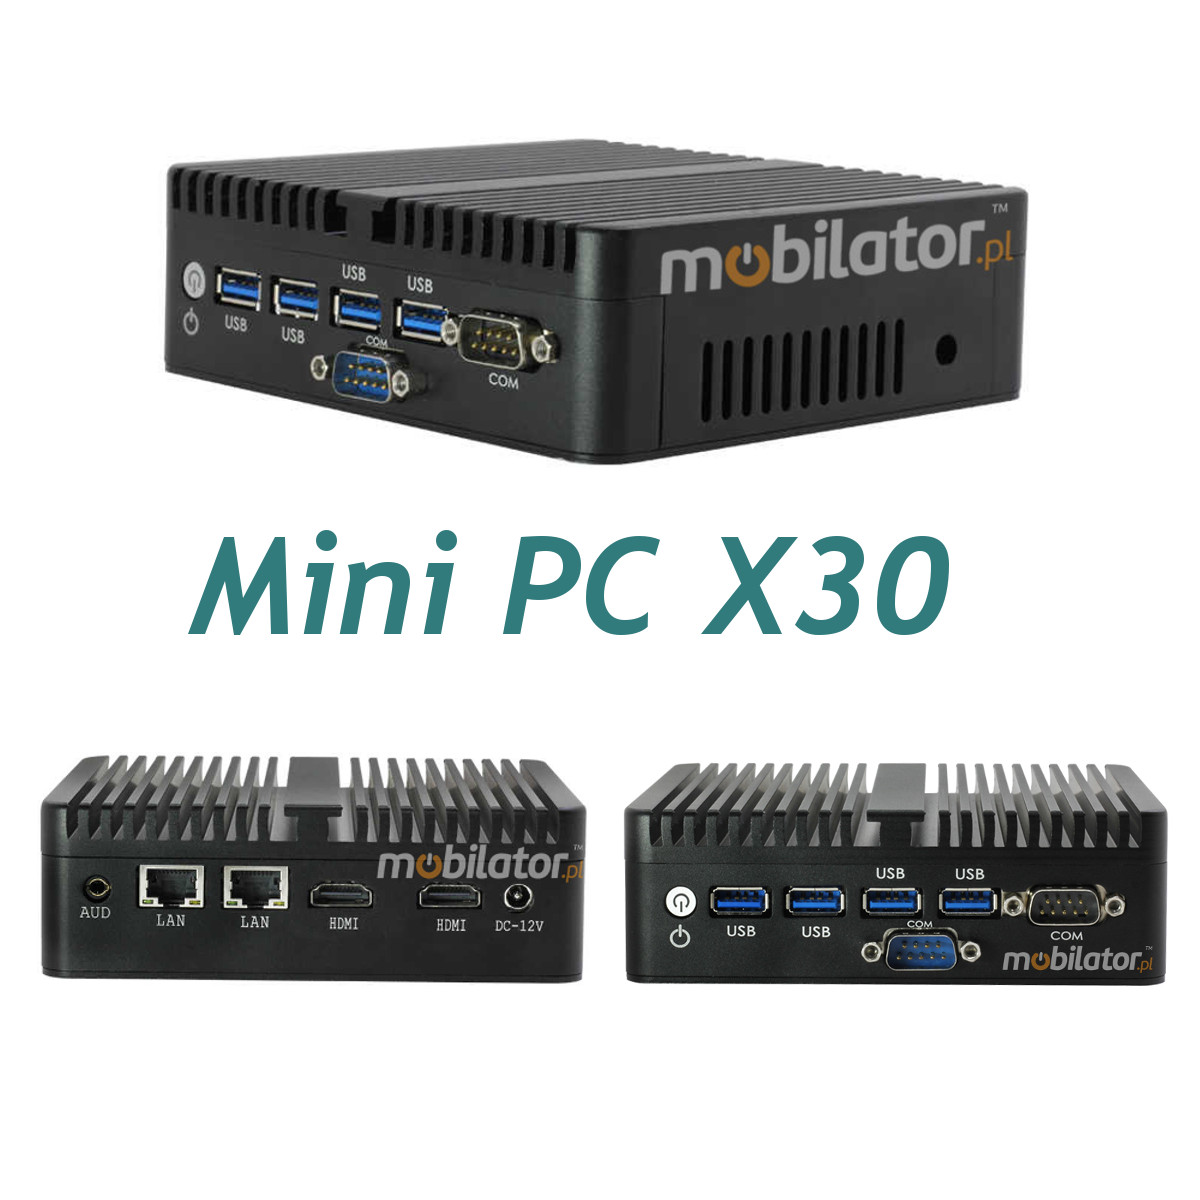 MiniPC yBOX-X30 Fanless Small Computer